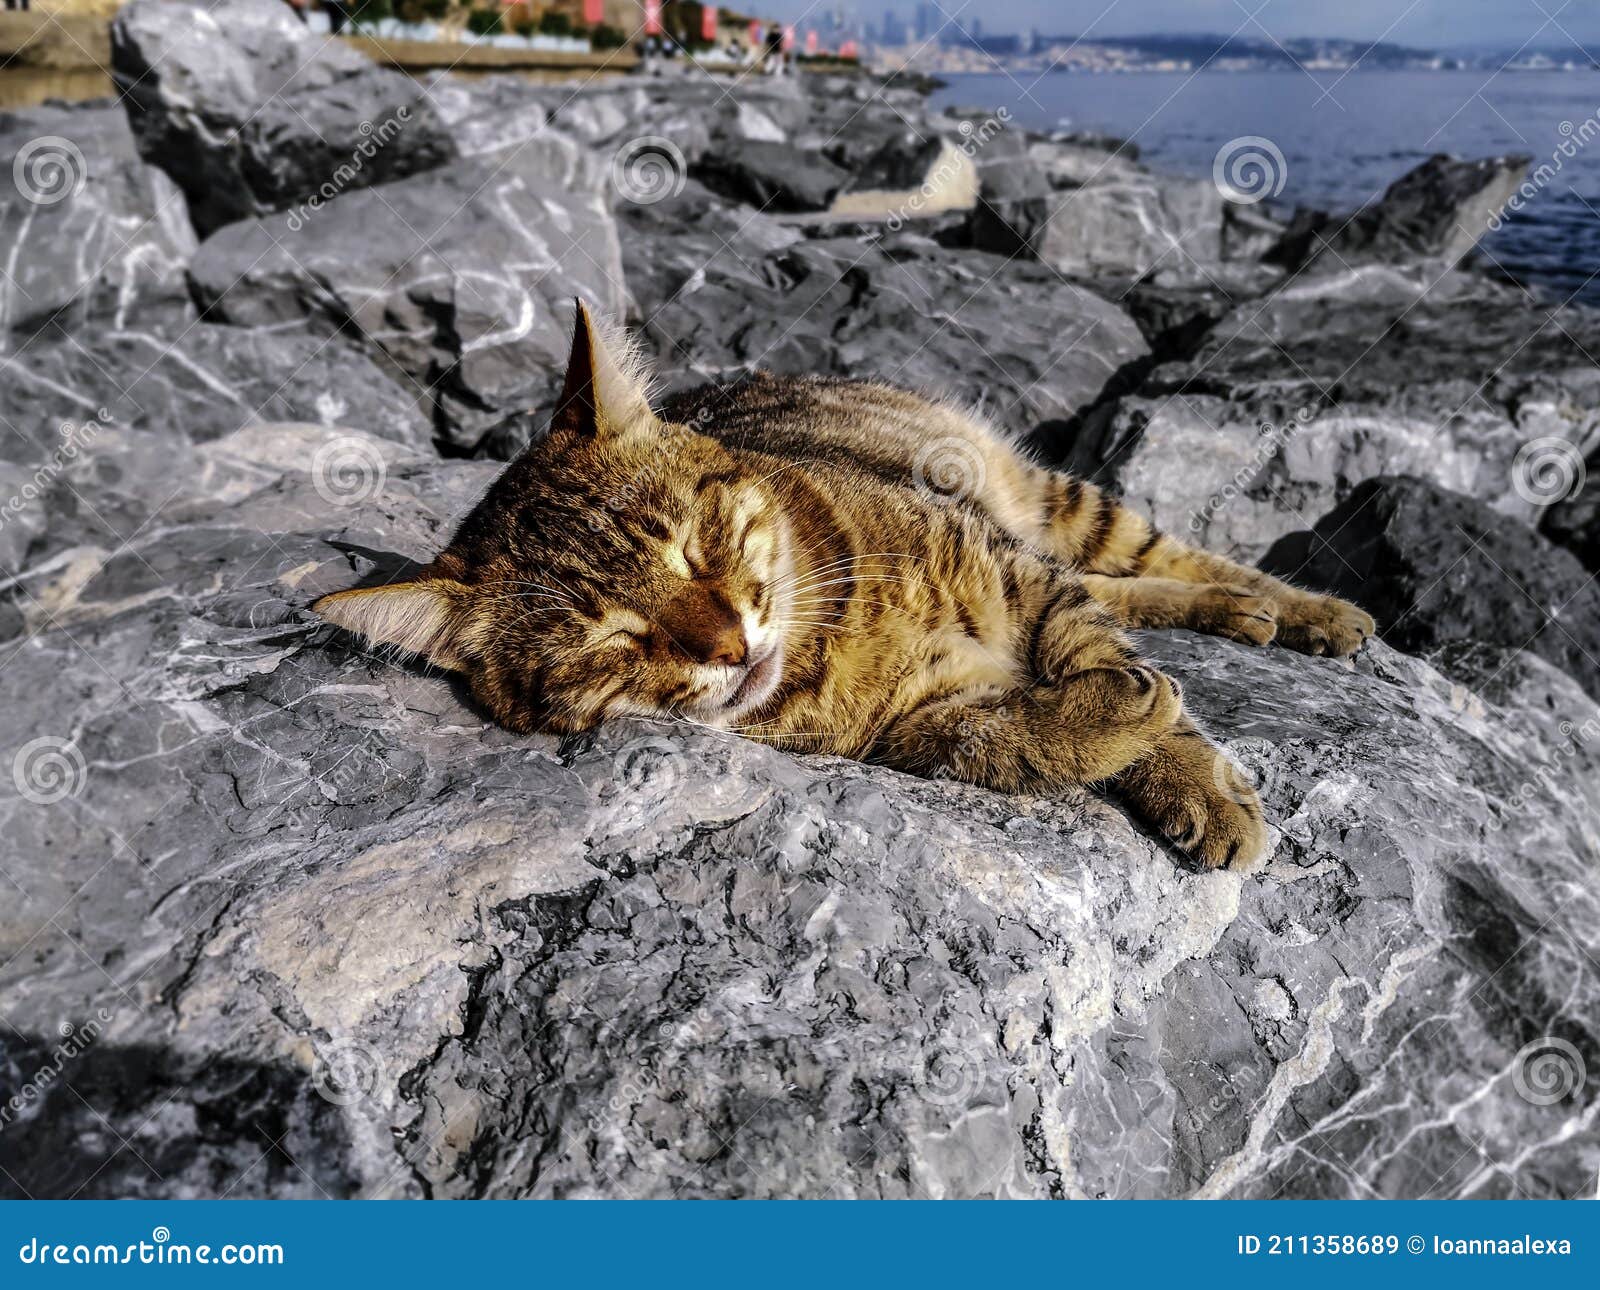 https://thumbs.dreamstime.com/z/ginger-tabby-cat-basking-sun-lying-gray-boulders-embankment-bosphorus-istanbul-turkey-portrait-happy-homeless-211358689.jpg